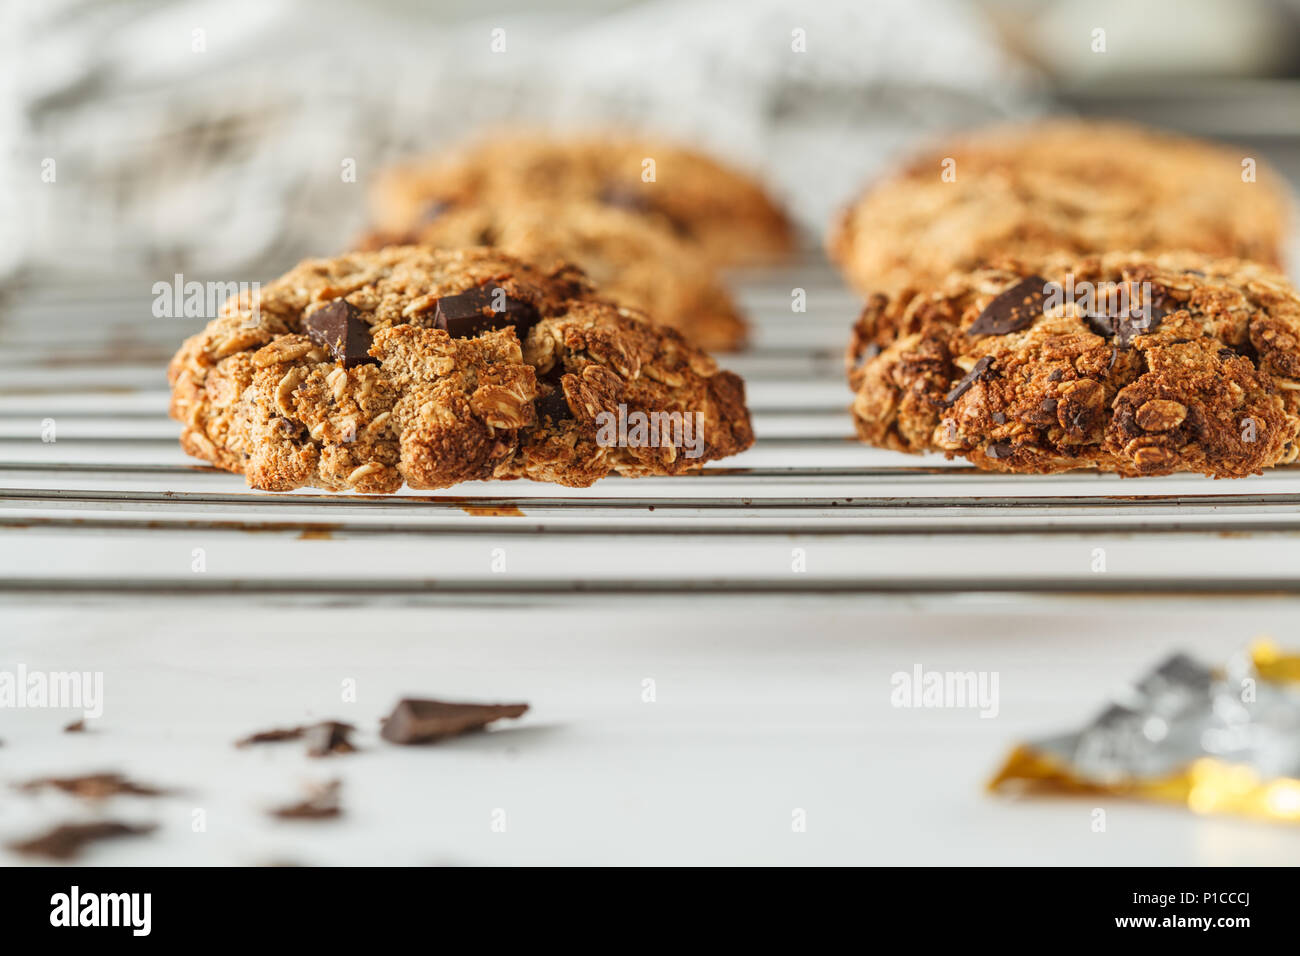 Vegan Haferflocken Kekse mit Schokolade auf einem hellen Hintergrund. Essen blog style Konzept. Stockfoto